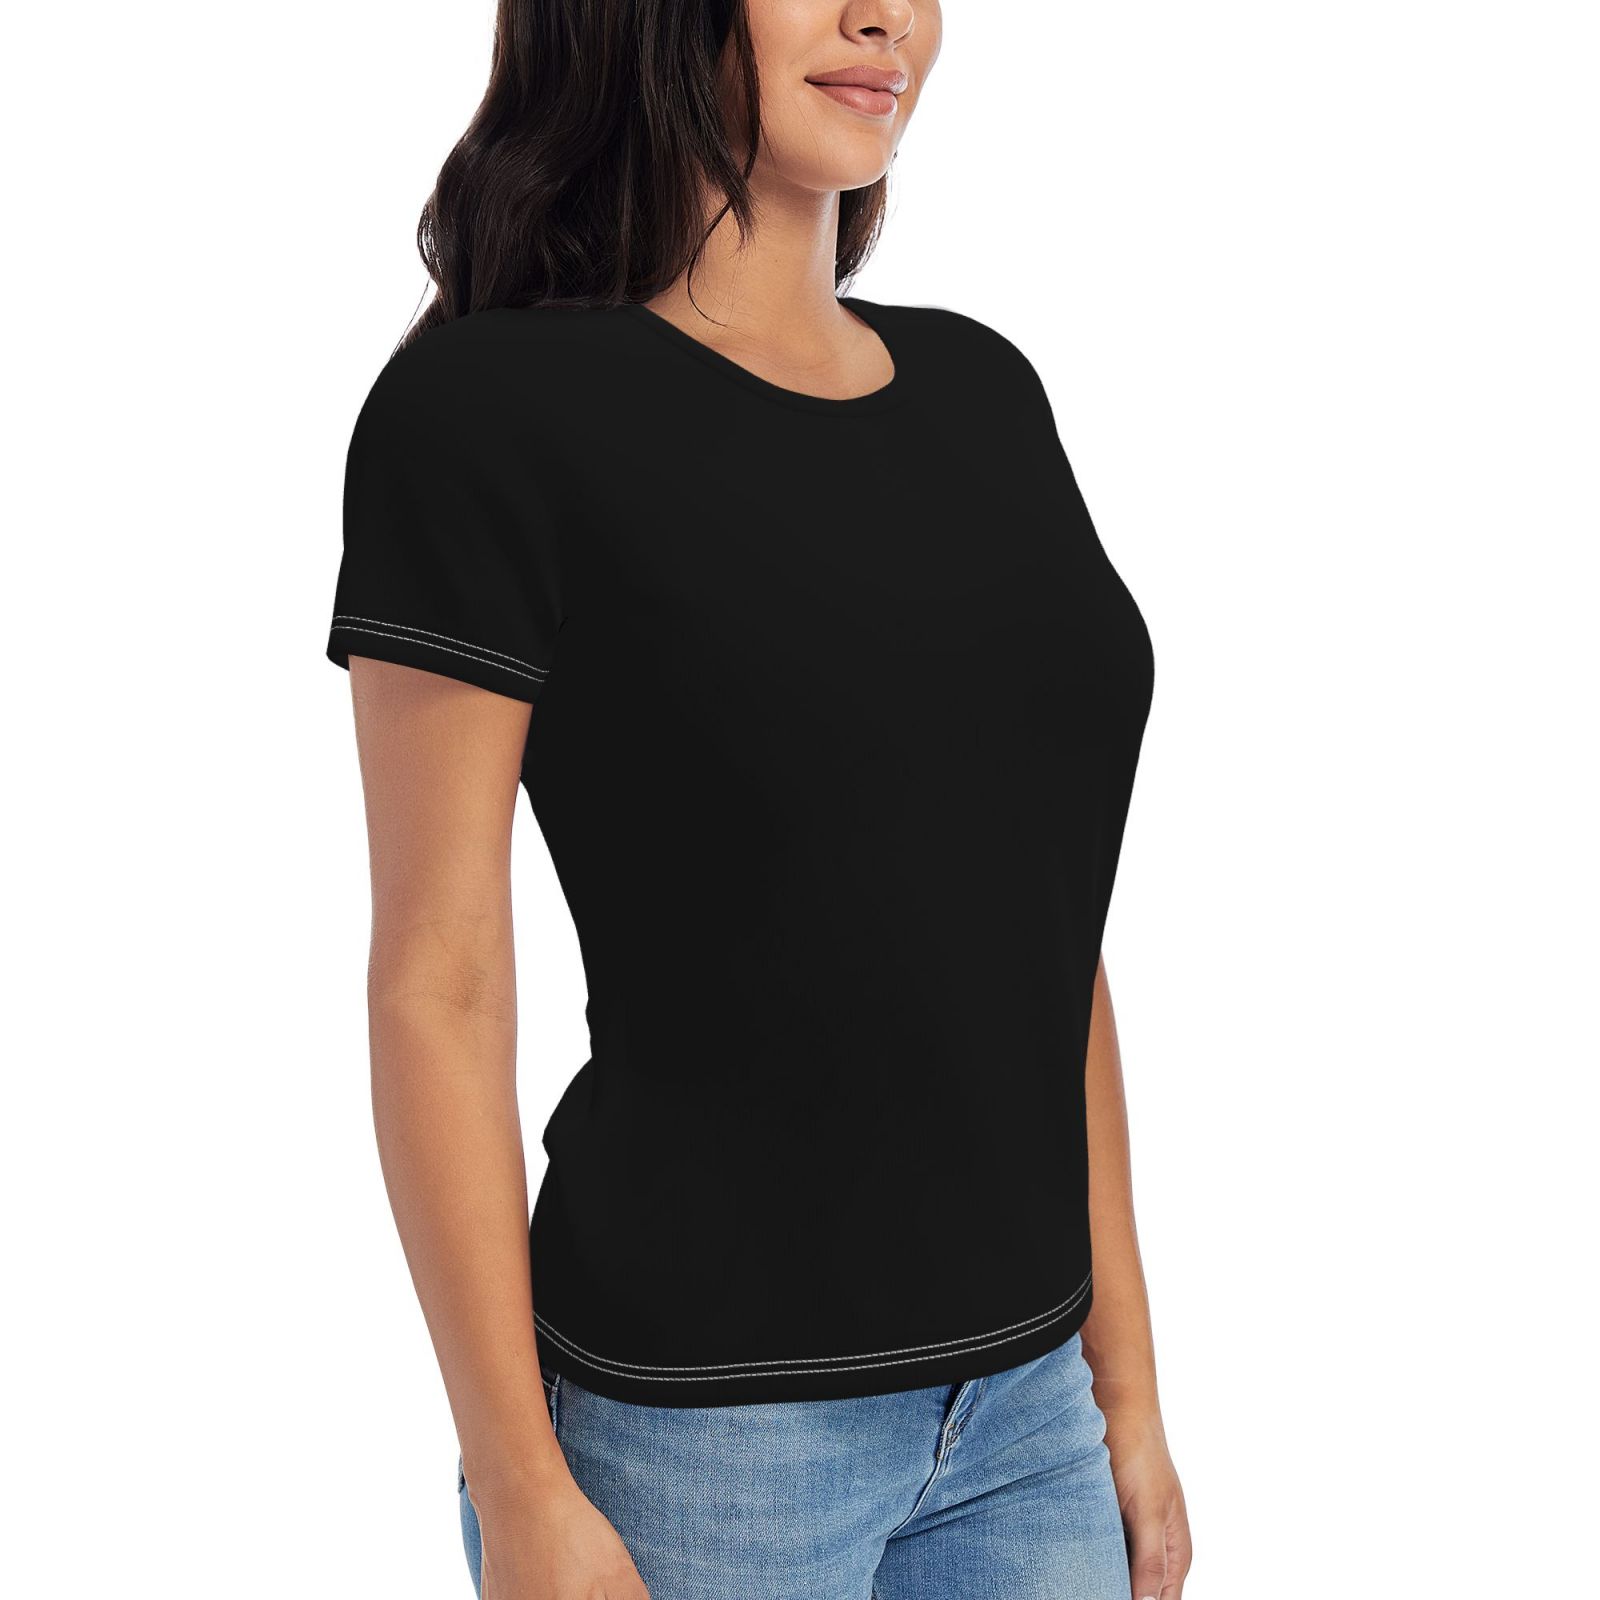 Women's Short-Sleeve T Shirts